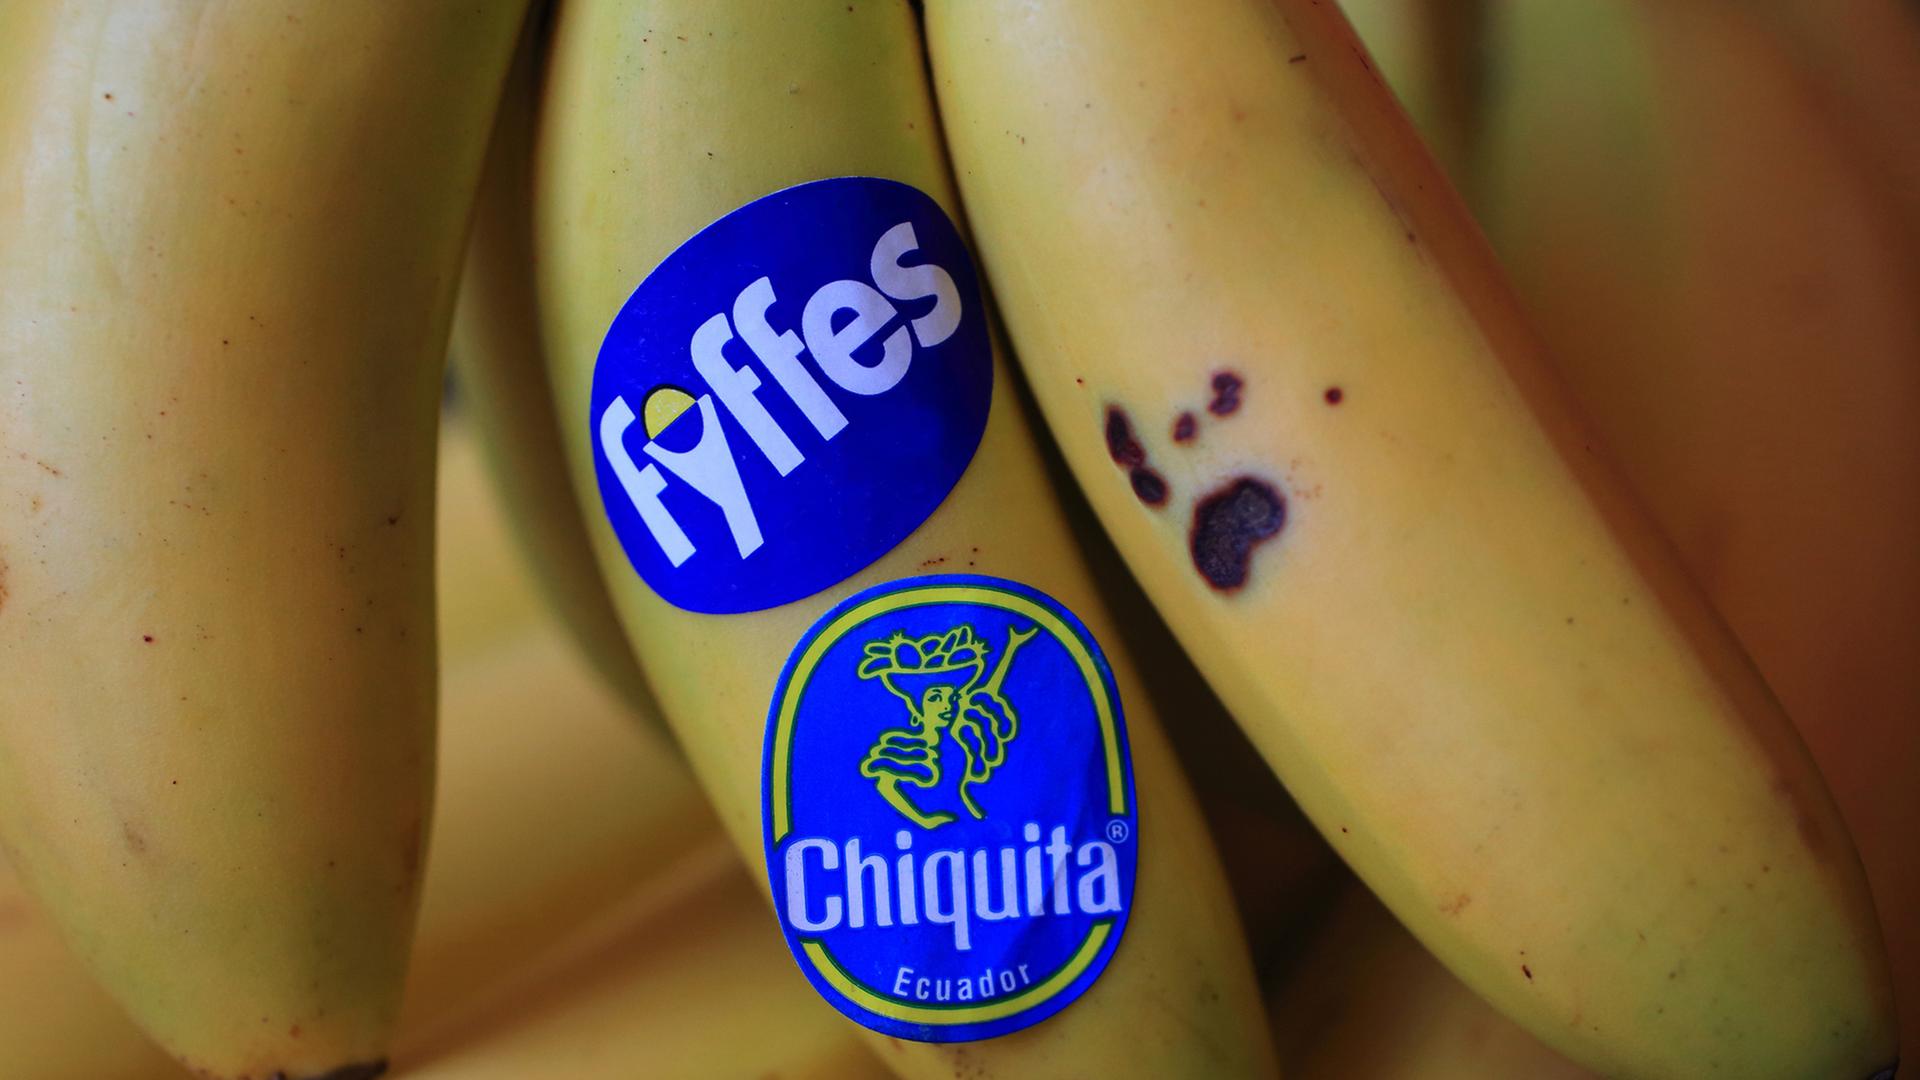 Ein Bündel Bananen, auf einer kleben die Markenzeichen des US-Bananenhändlers Chiquita und des bisherigen Konkurrenten Fyffes